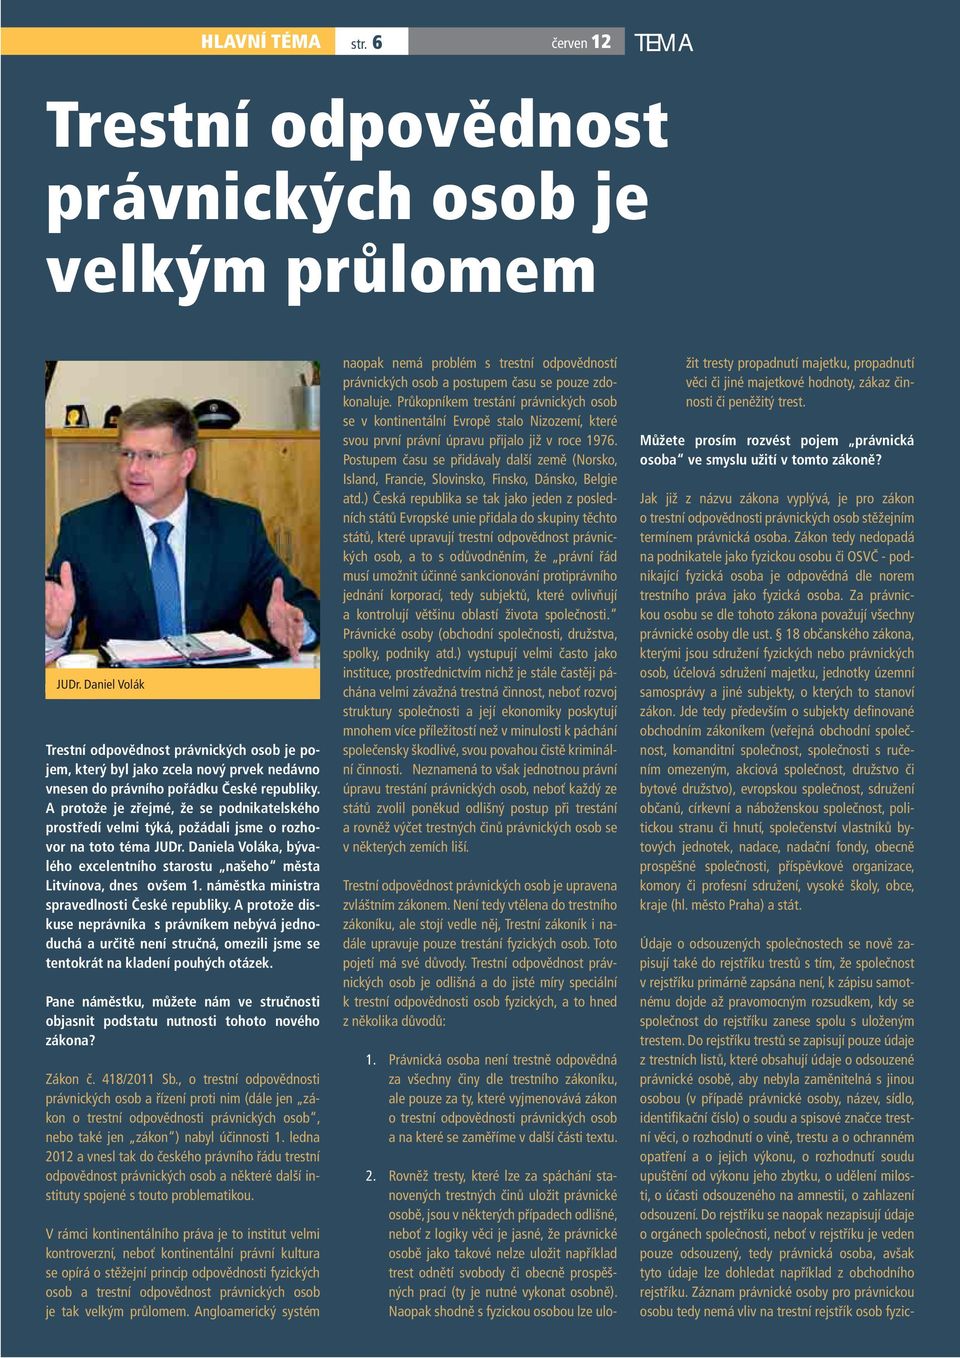 A protože je zřejmé, že se podnikatelského prostředí velmi týká, požádali jsme o rozhovor na toto téma JUDr. Daniela Voláka, bývalého excelentního starostu našeho města Litvínova, dnes ovšem 1.